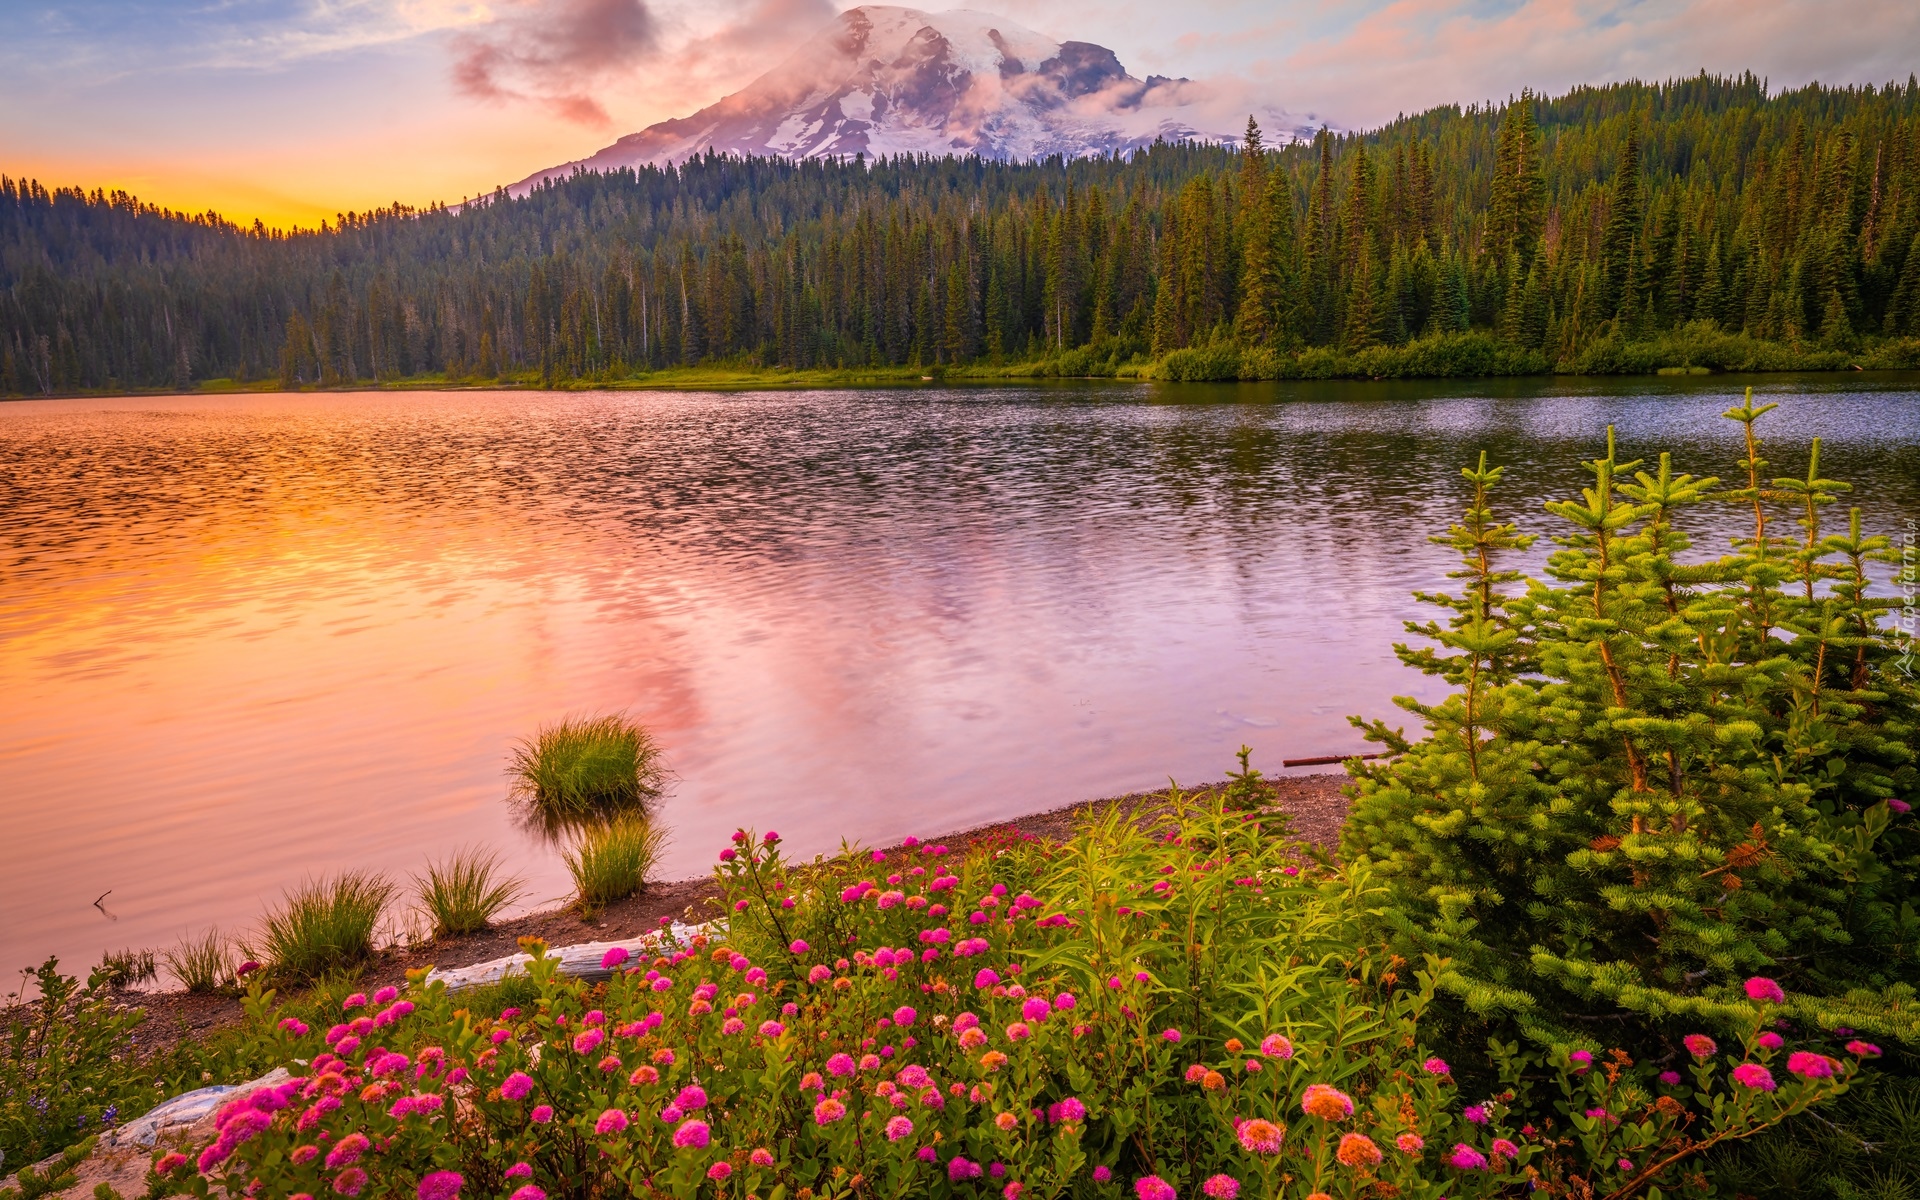 Park Narodowy Mount Rainier, Góra, Stratowulkan Mount Rainier, Jezioro, Drzewa, Kwiaty, Zachód słońca, Chmury, Stan Waszyngton, Stany Zjednoczone